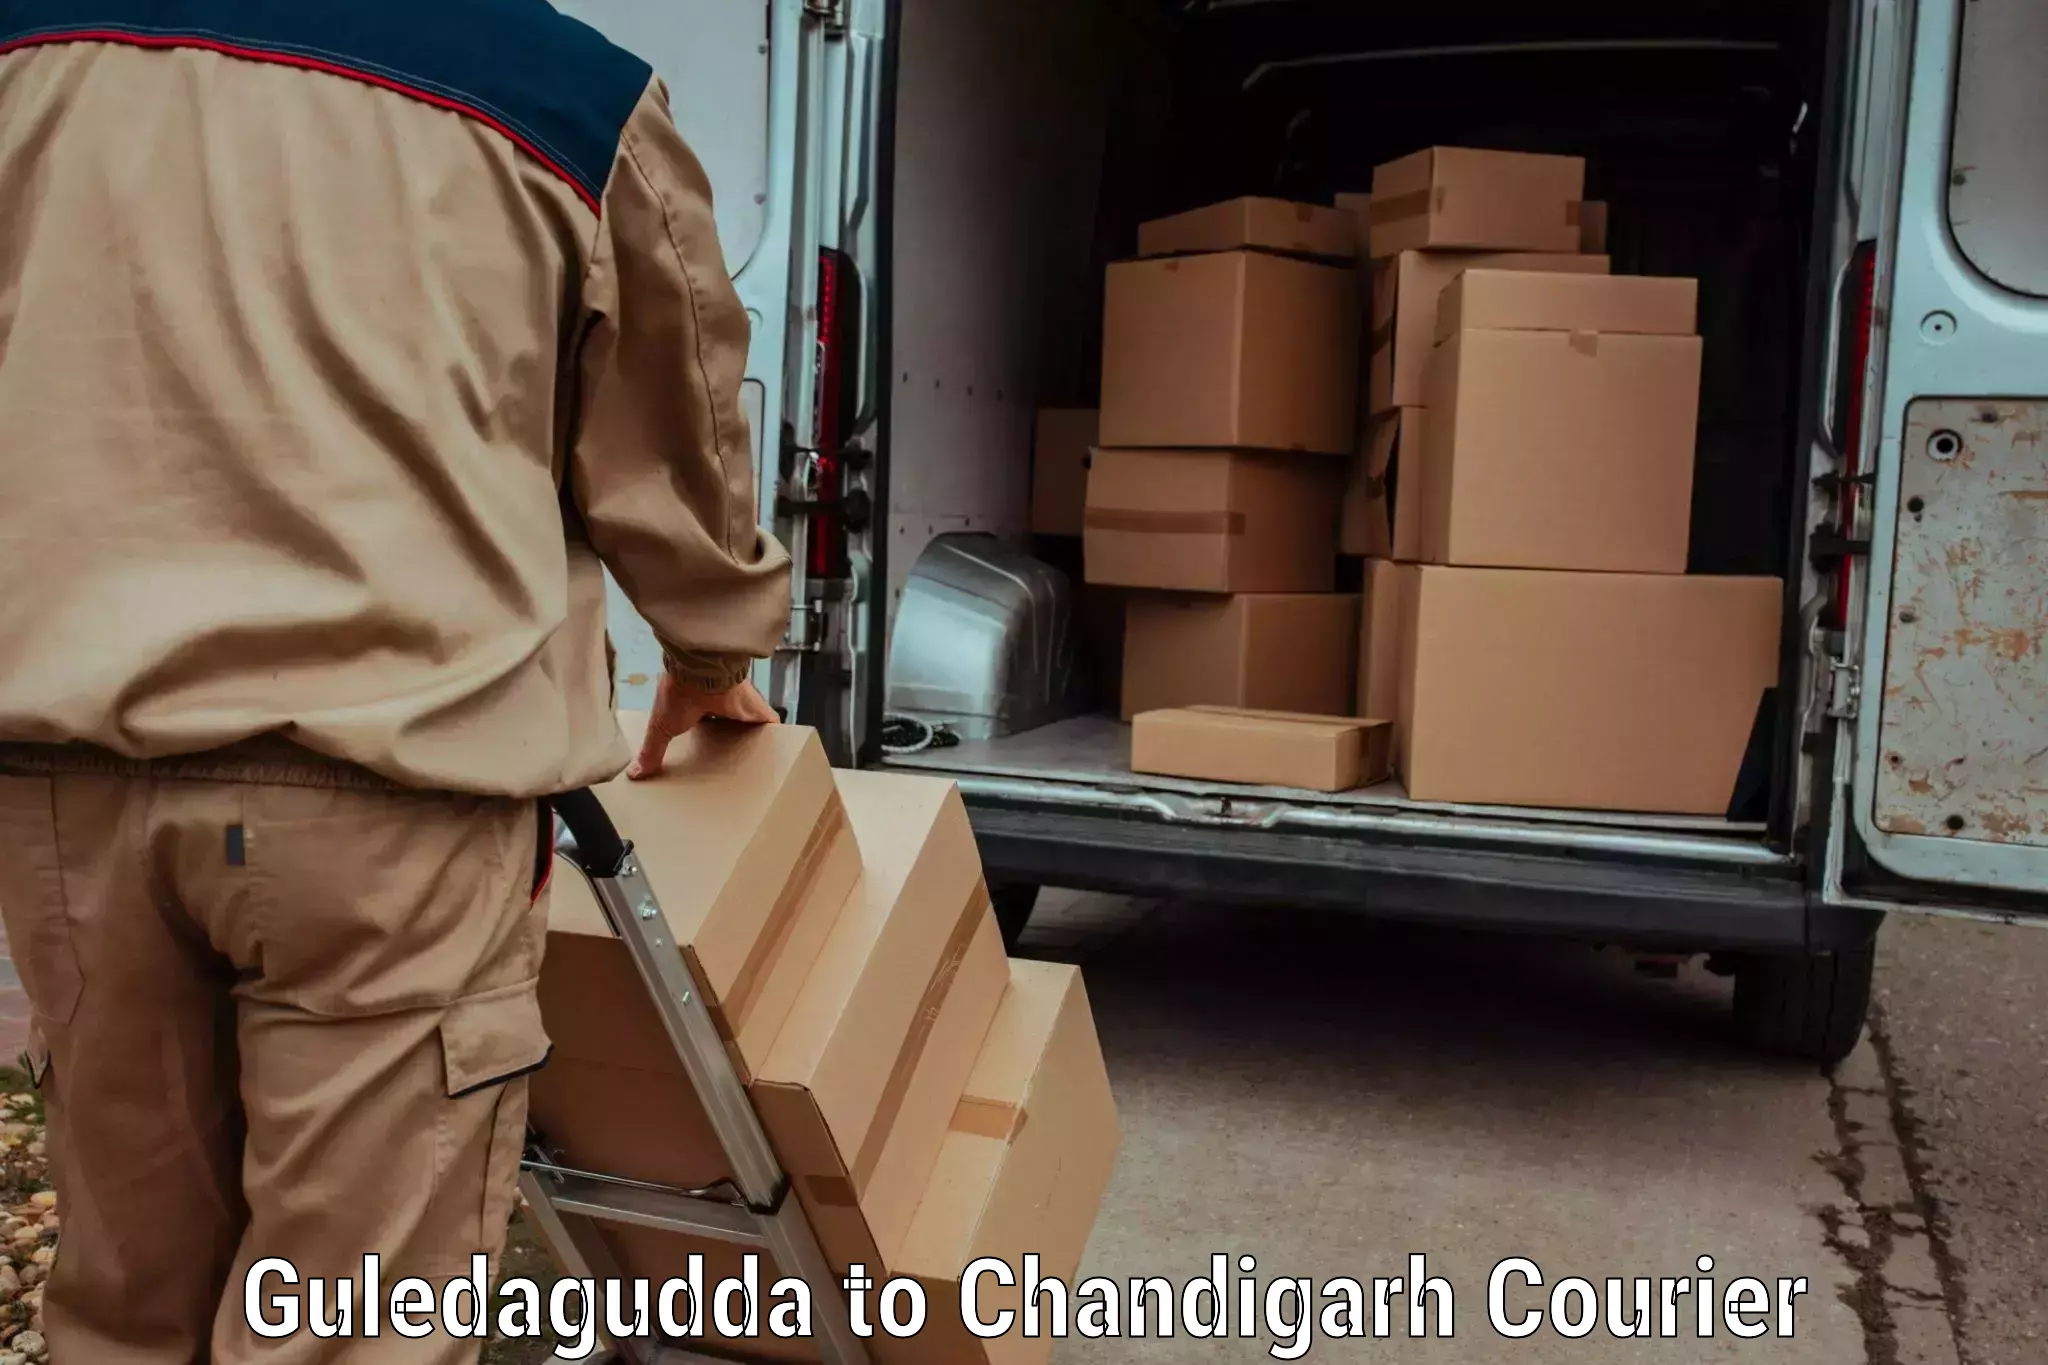 Modern parcel services Guledagudda to Chandigarh